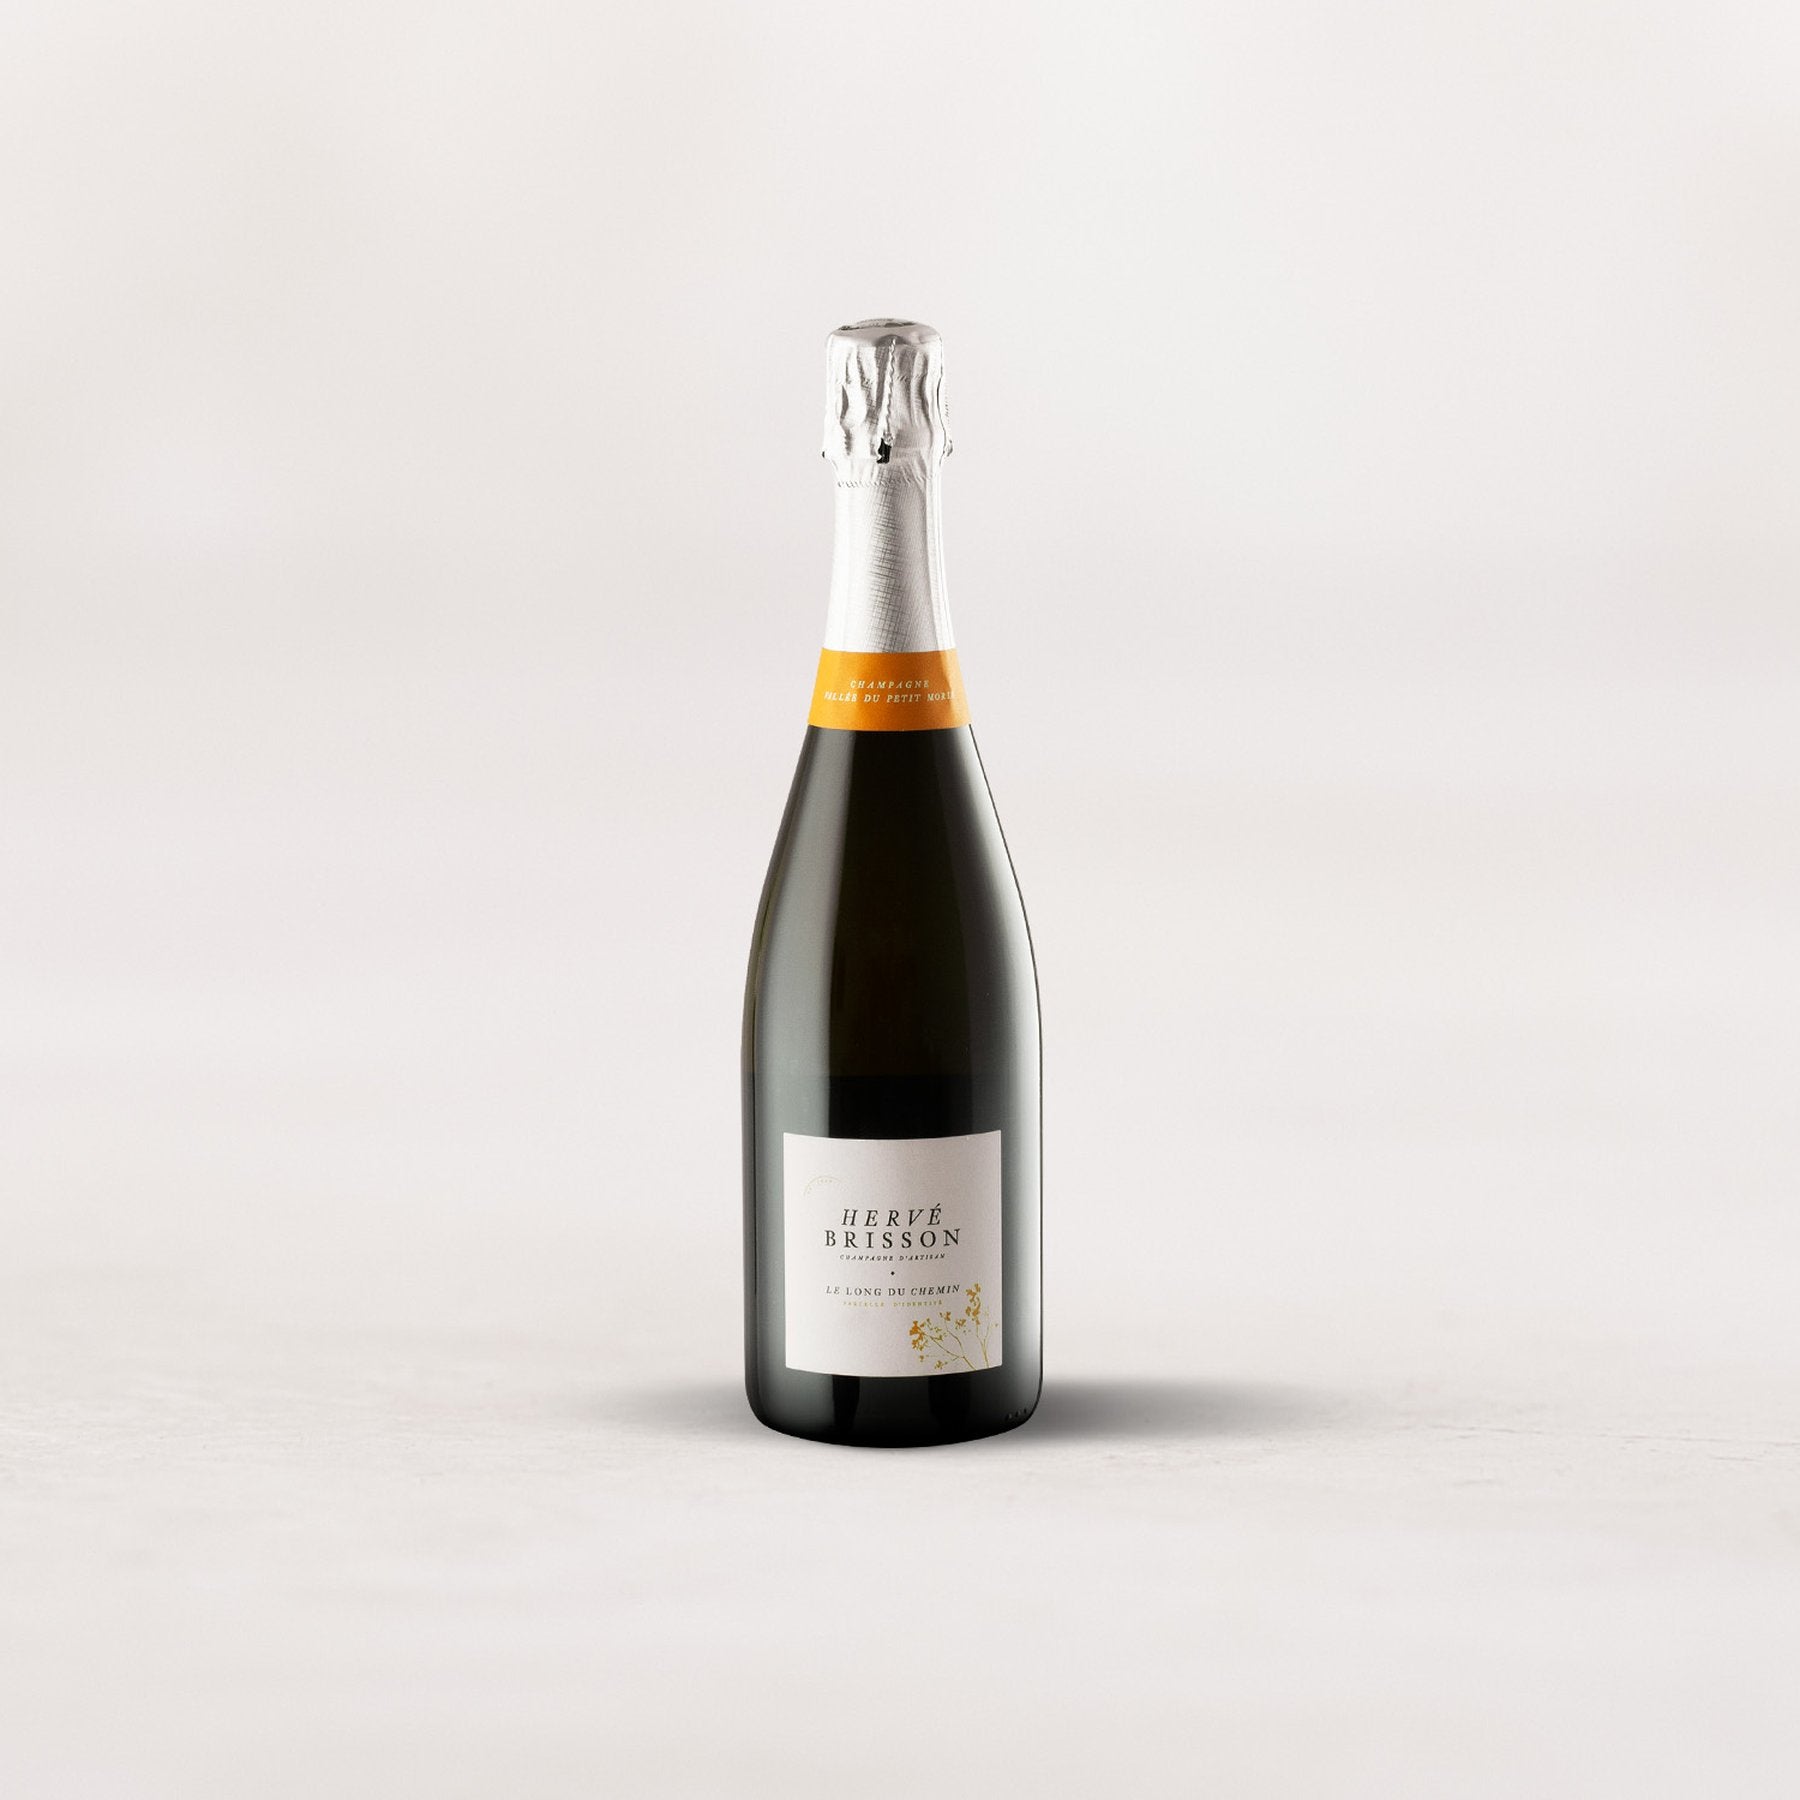 Champagne Hervé Brisson, “Le Long du Chemin”